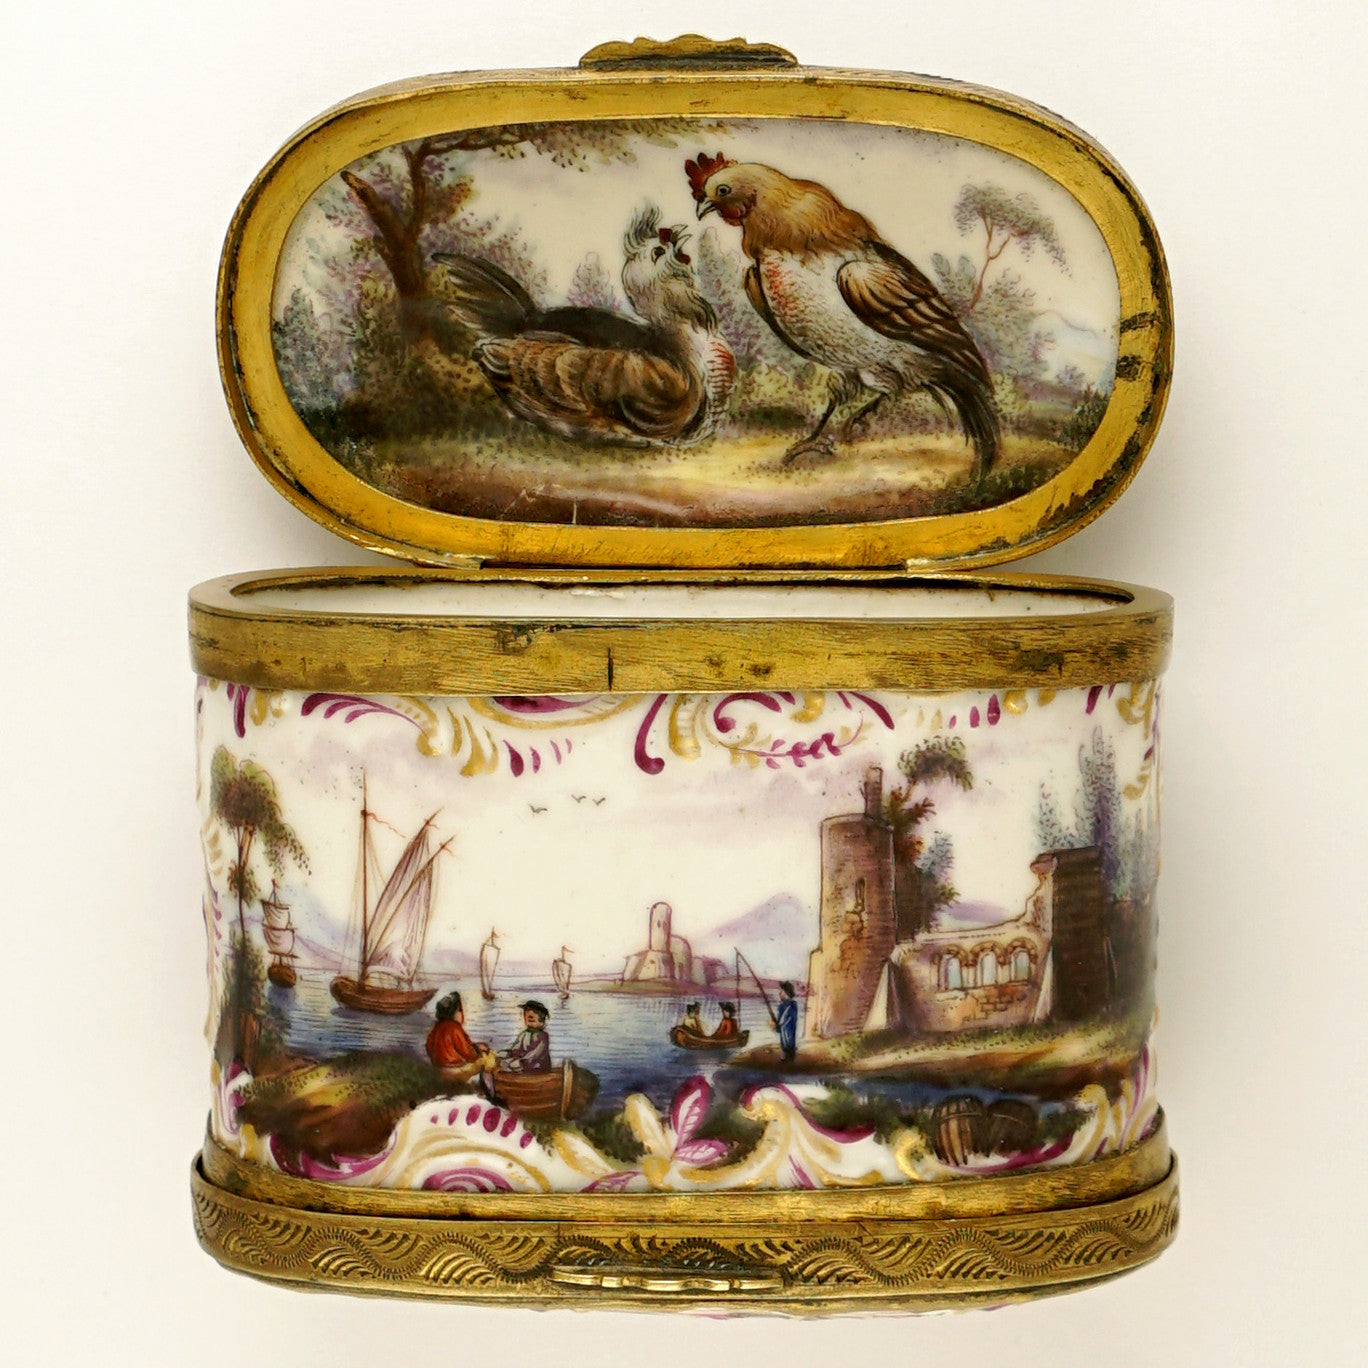 Antique Gilt Mounted – Doubl Boutique Box, The Rare Tabatiere, Antique German 18thc Porcelain